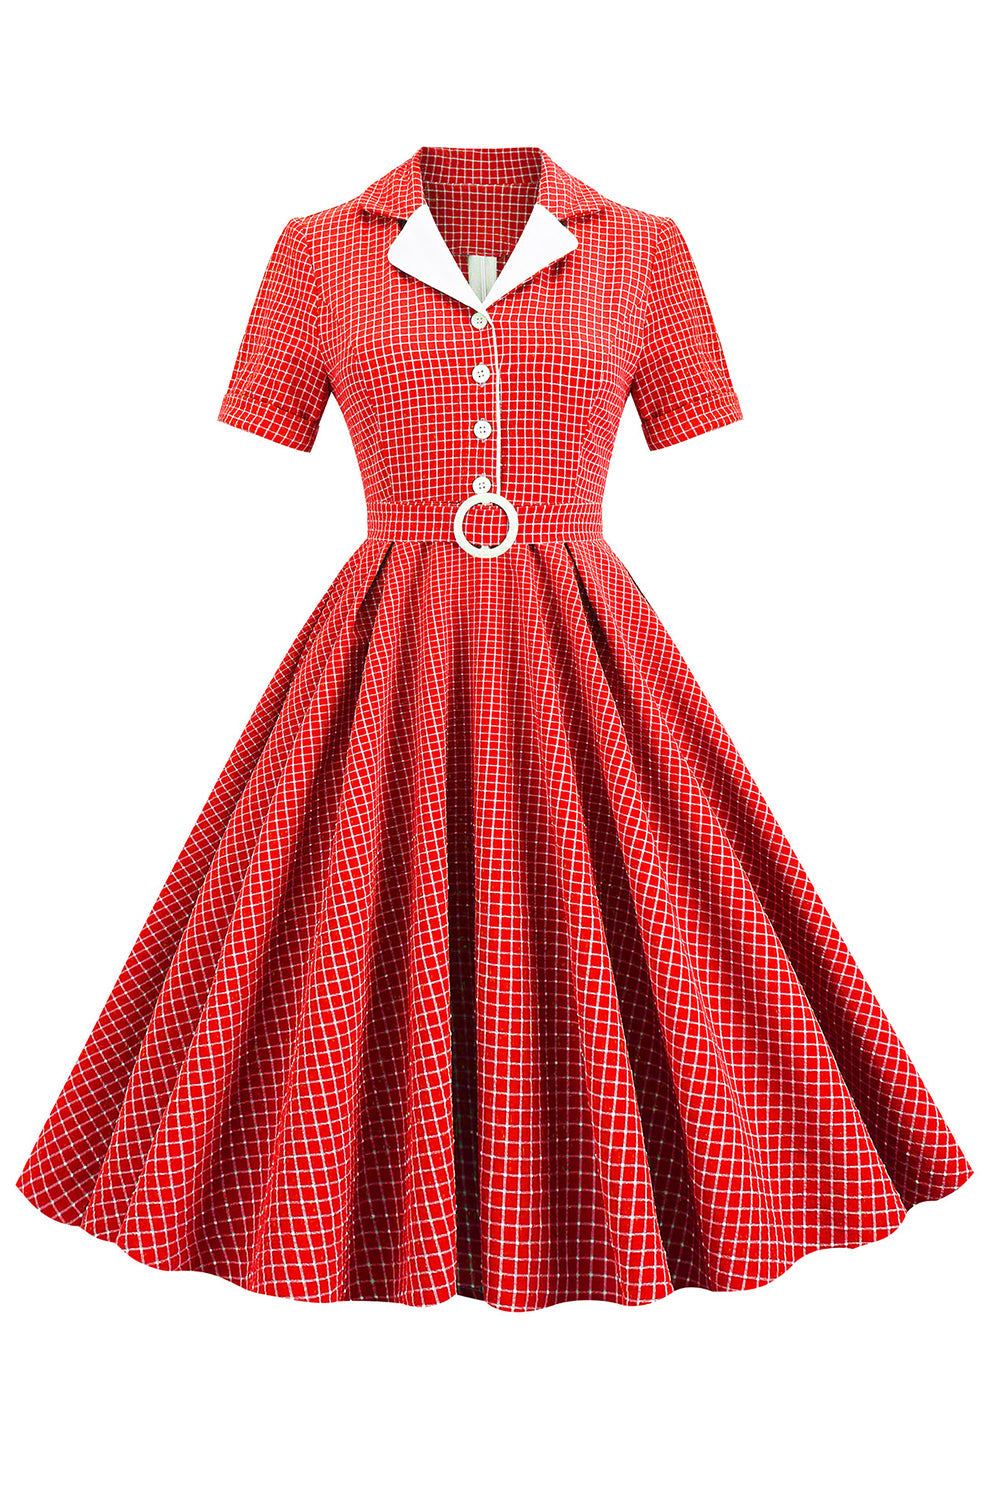 Zapaka Kvinder Rød Retro Kjole Stil 1950'erne Kjole med korte ærmer – ZAPAKA DA